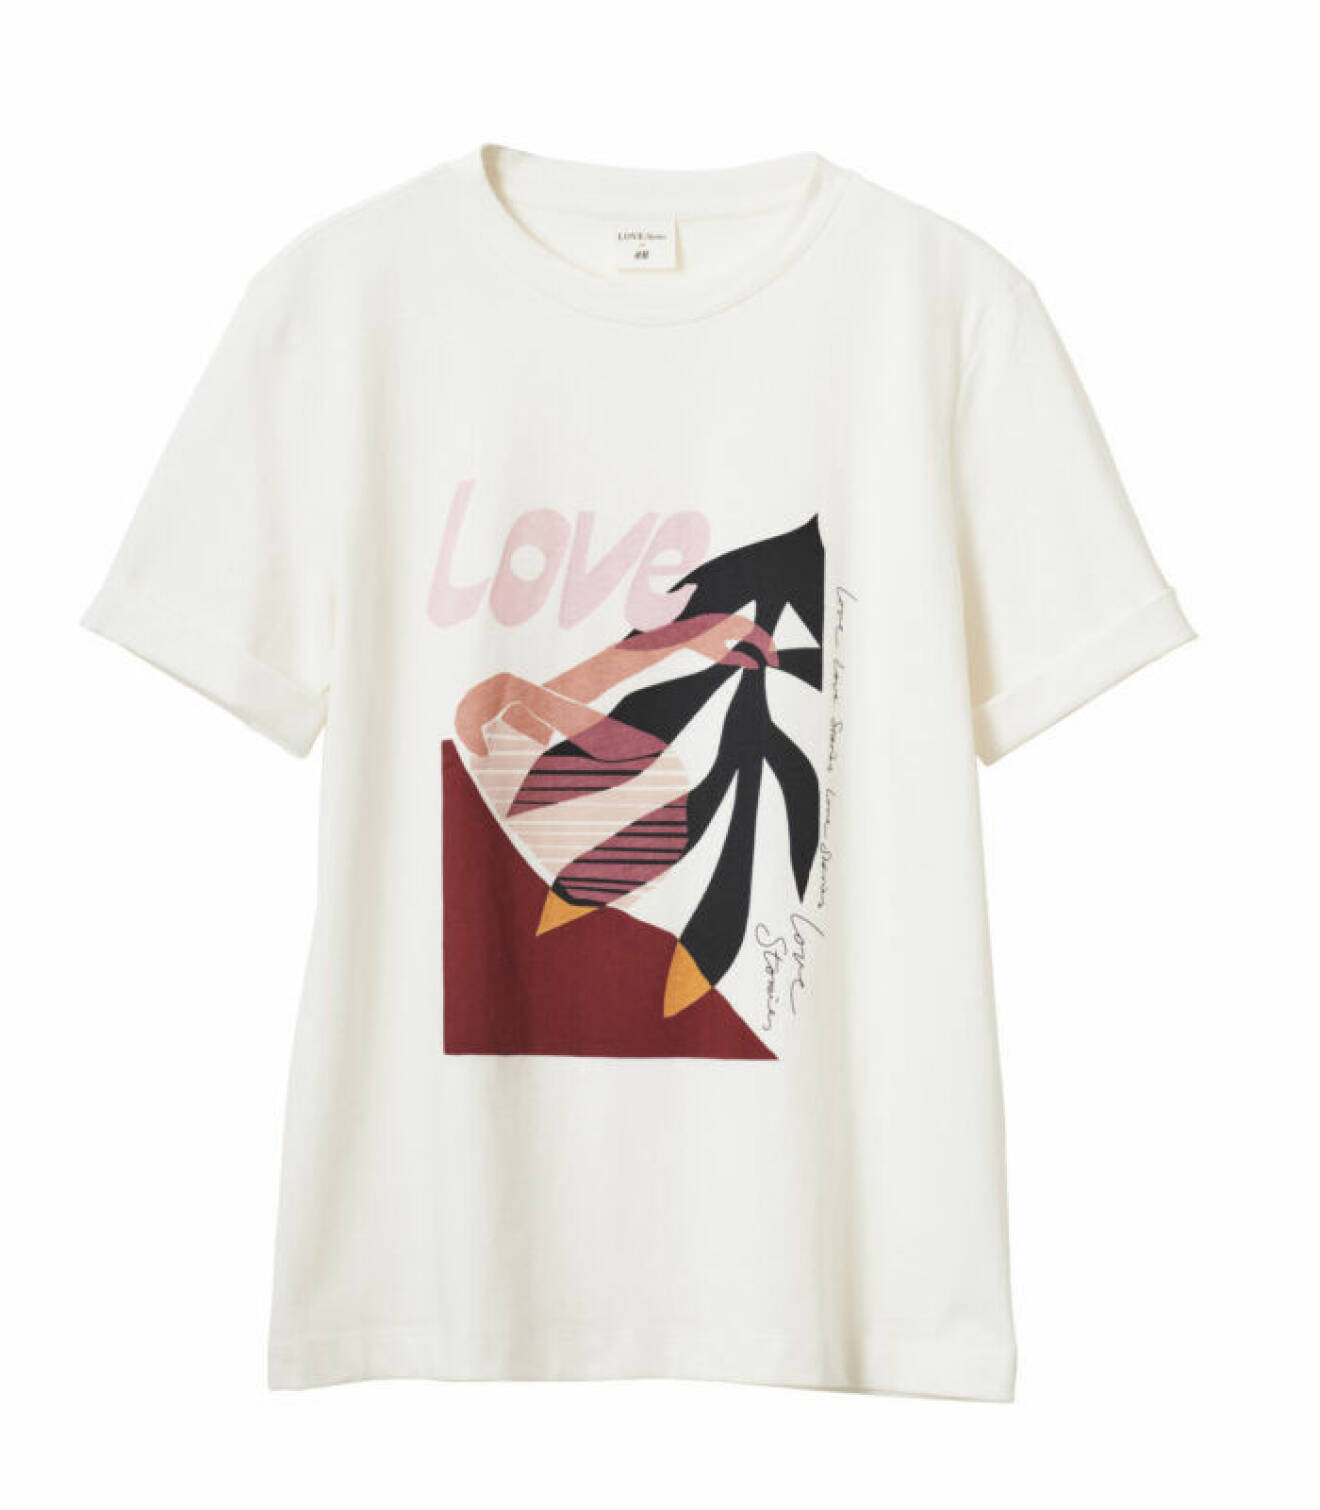 H&M släpper badkollektion med Love Stories – printad t-shirt